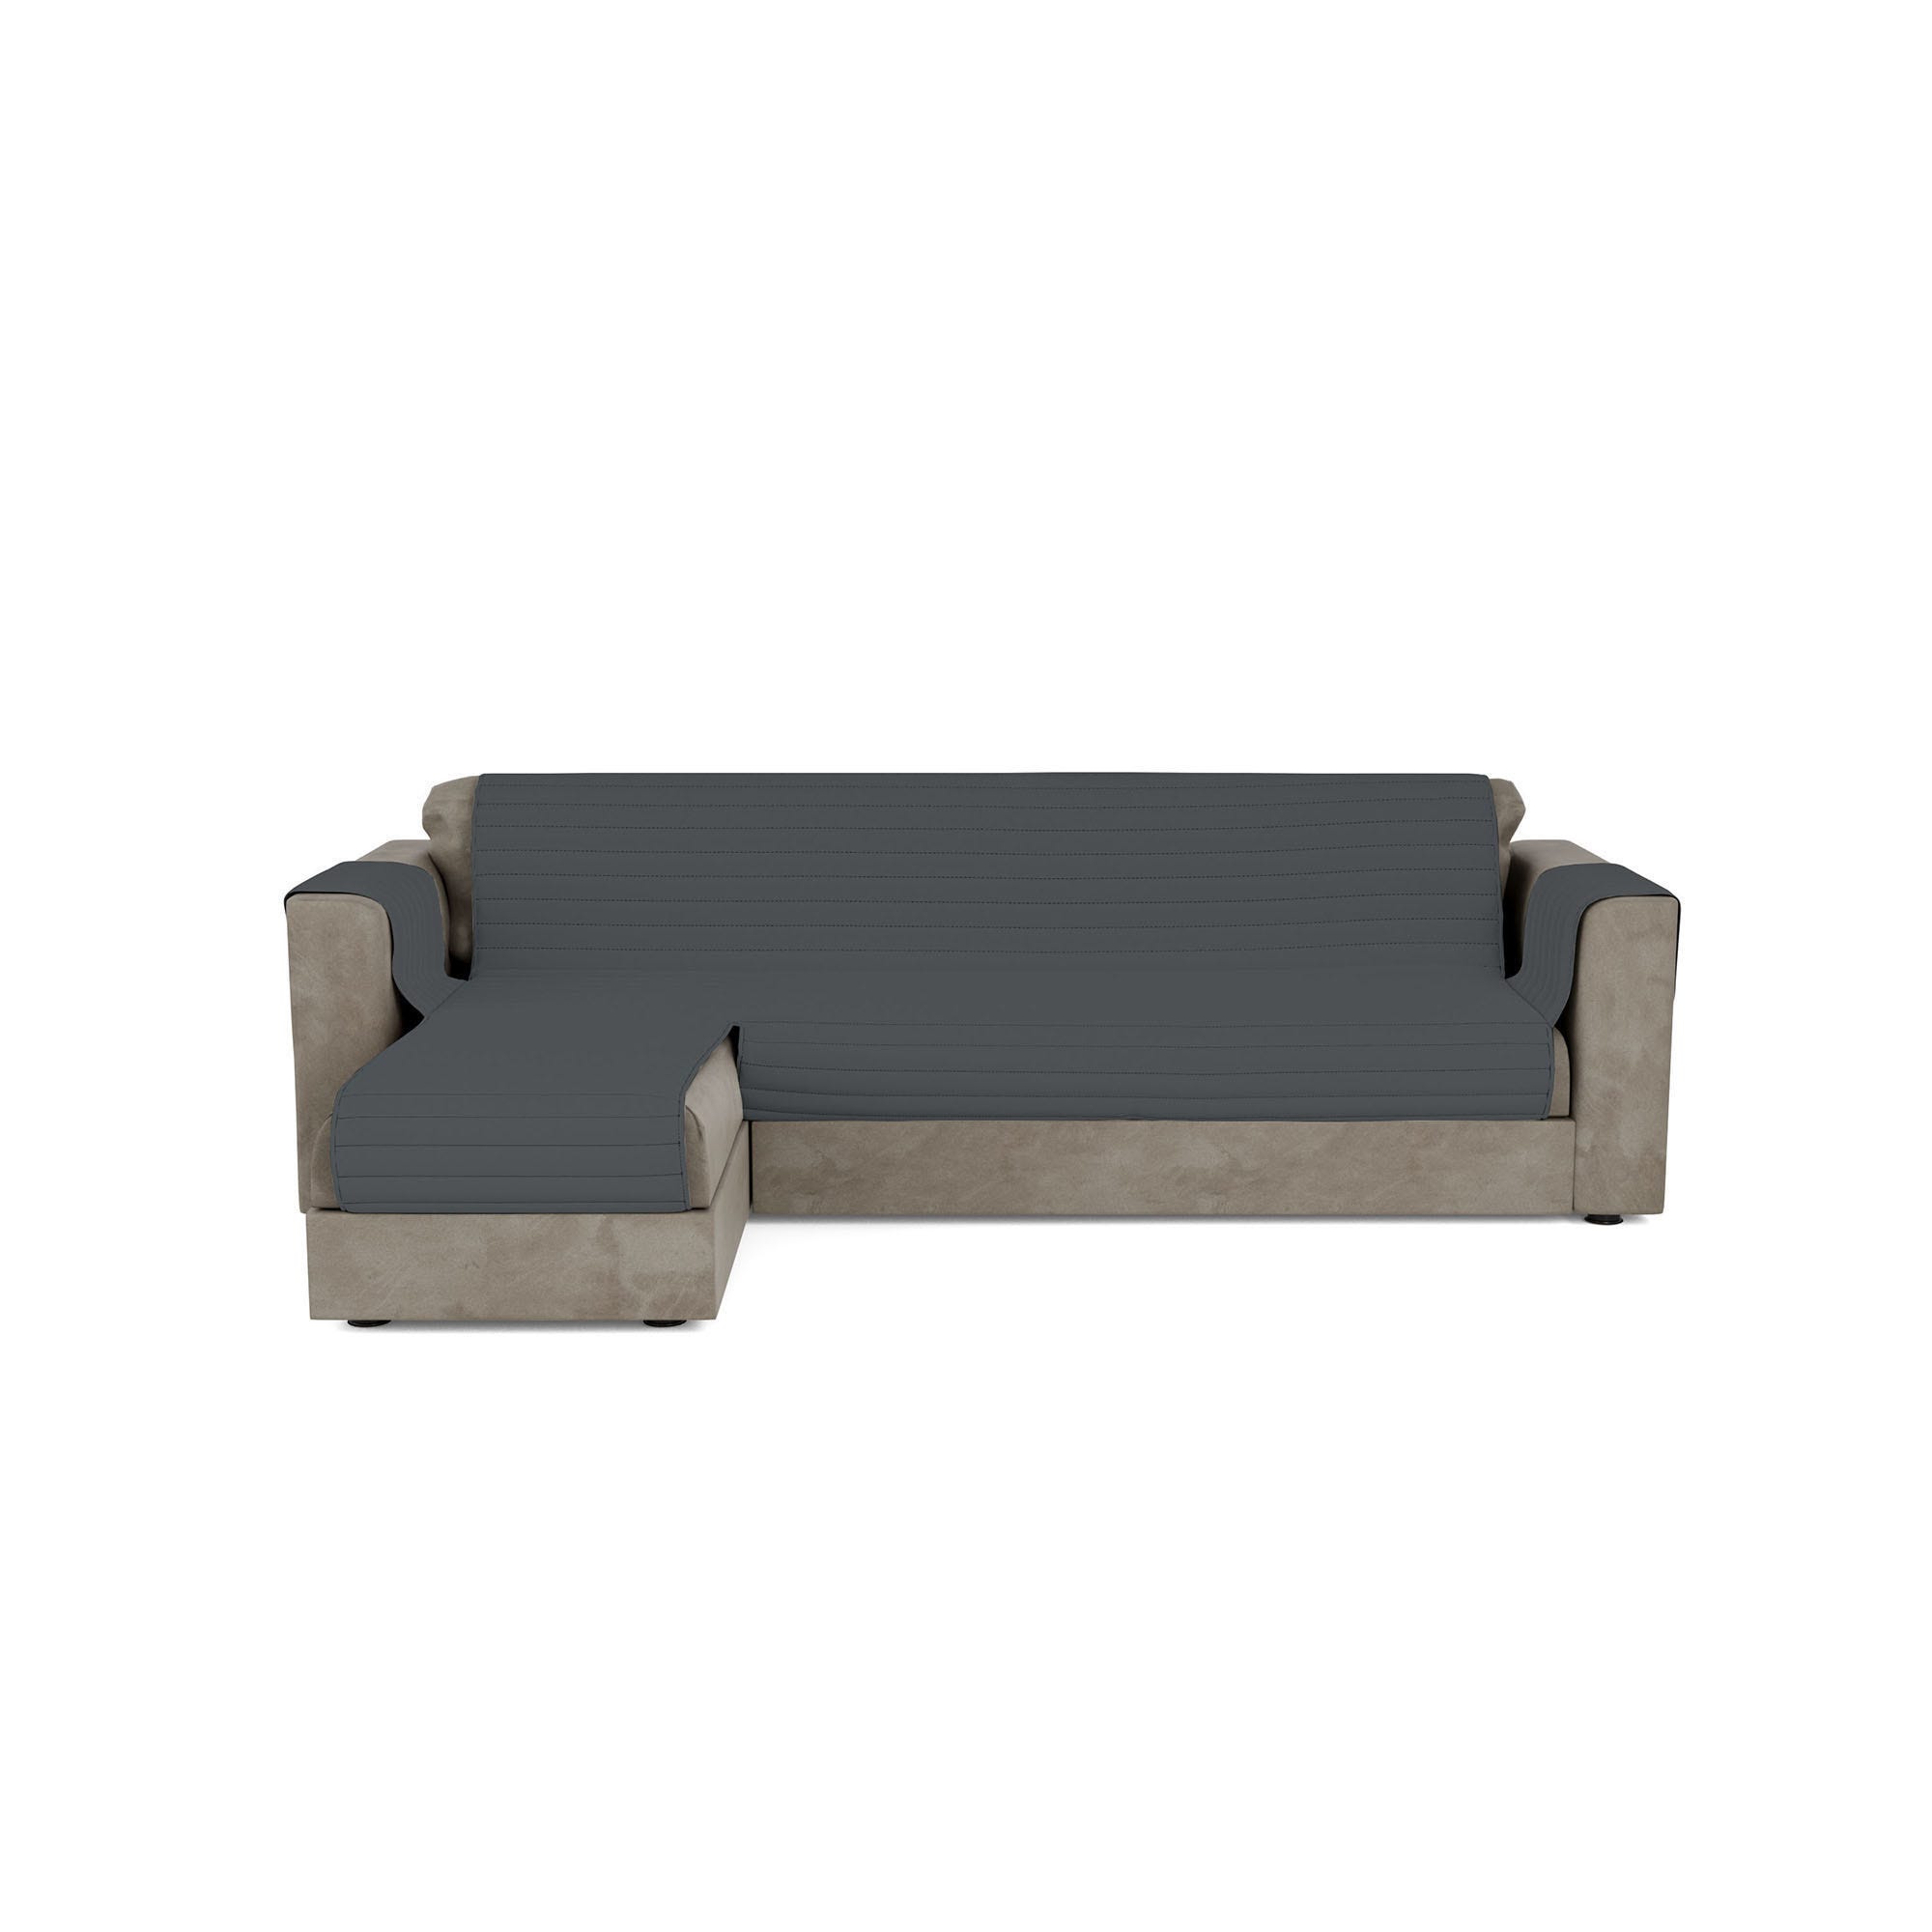 Copridivano per divano 3 posti con penisola reversibile destra e sinistra  impermeabile antimacchia 240x305 cm - Grey